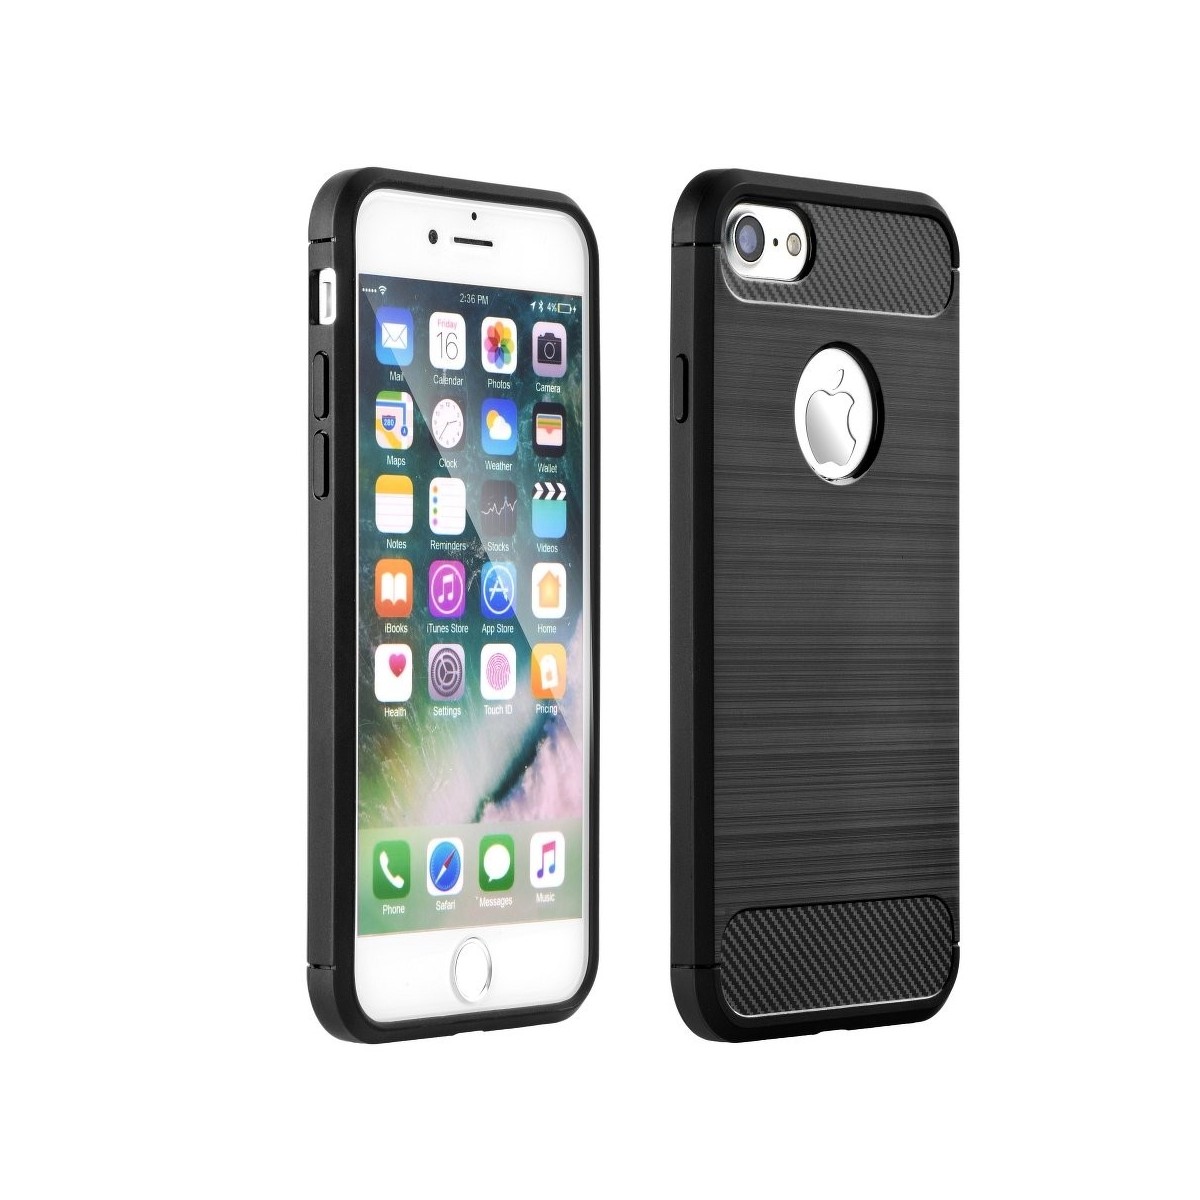 Coque iPhone 7/8 noir souple effet carbone - Crazy Kase